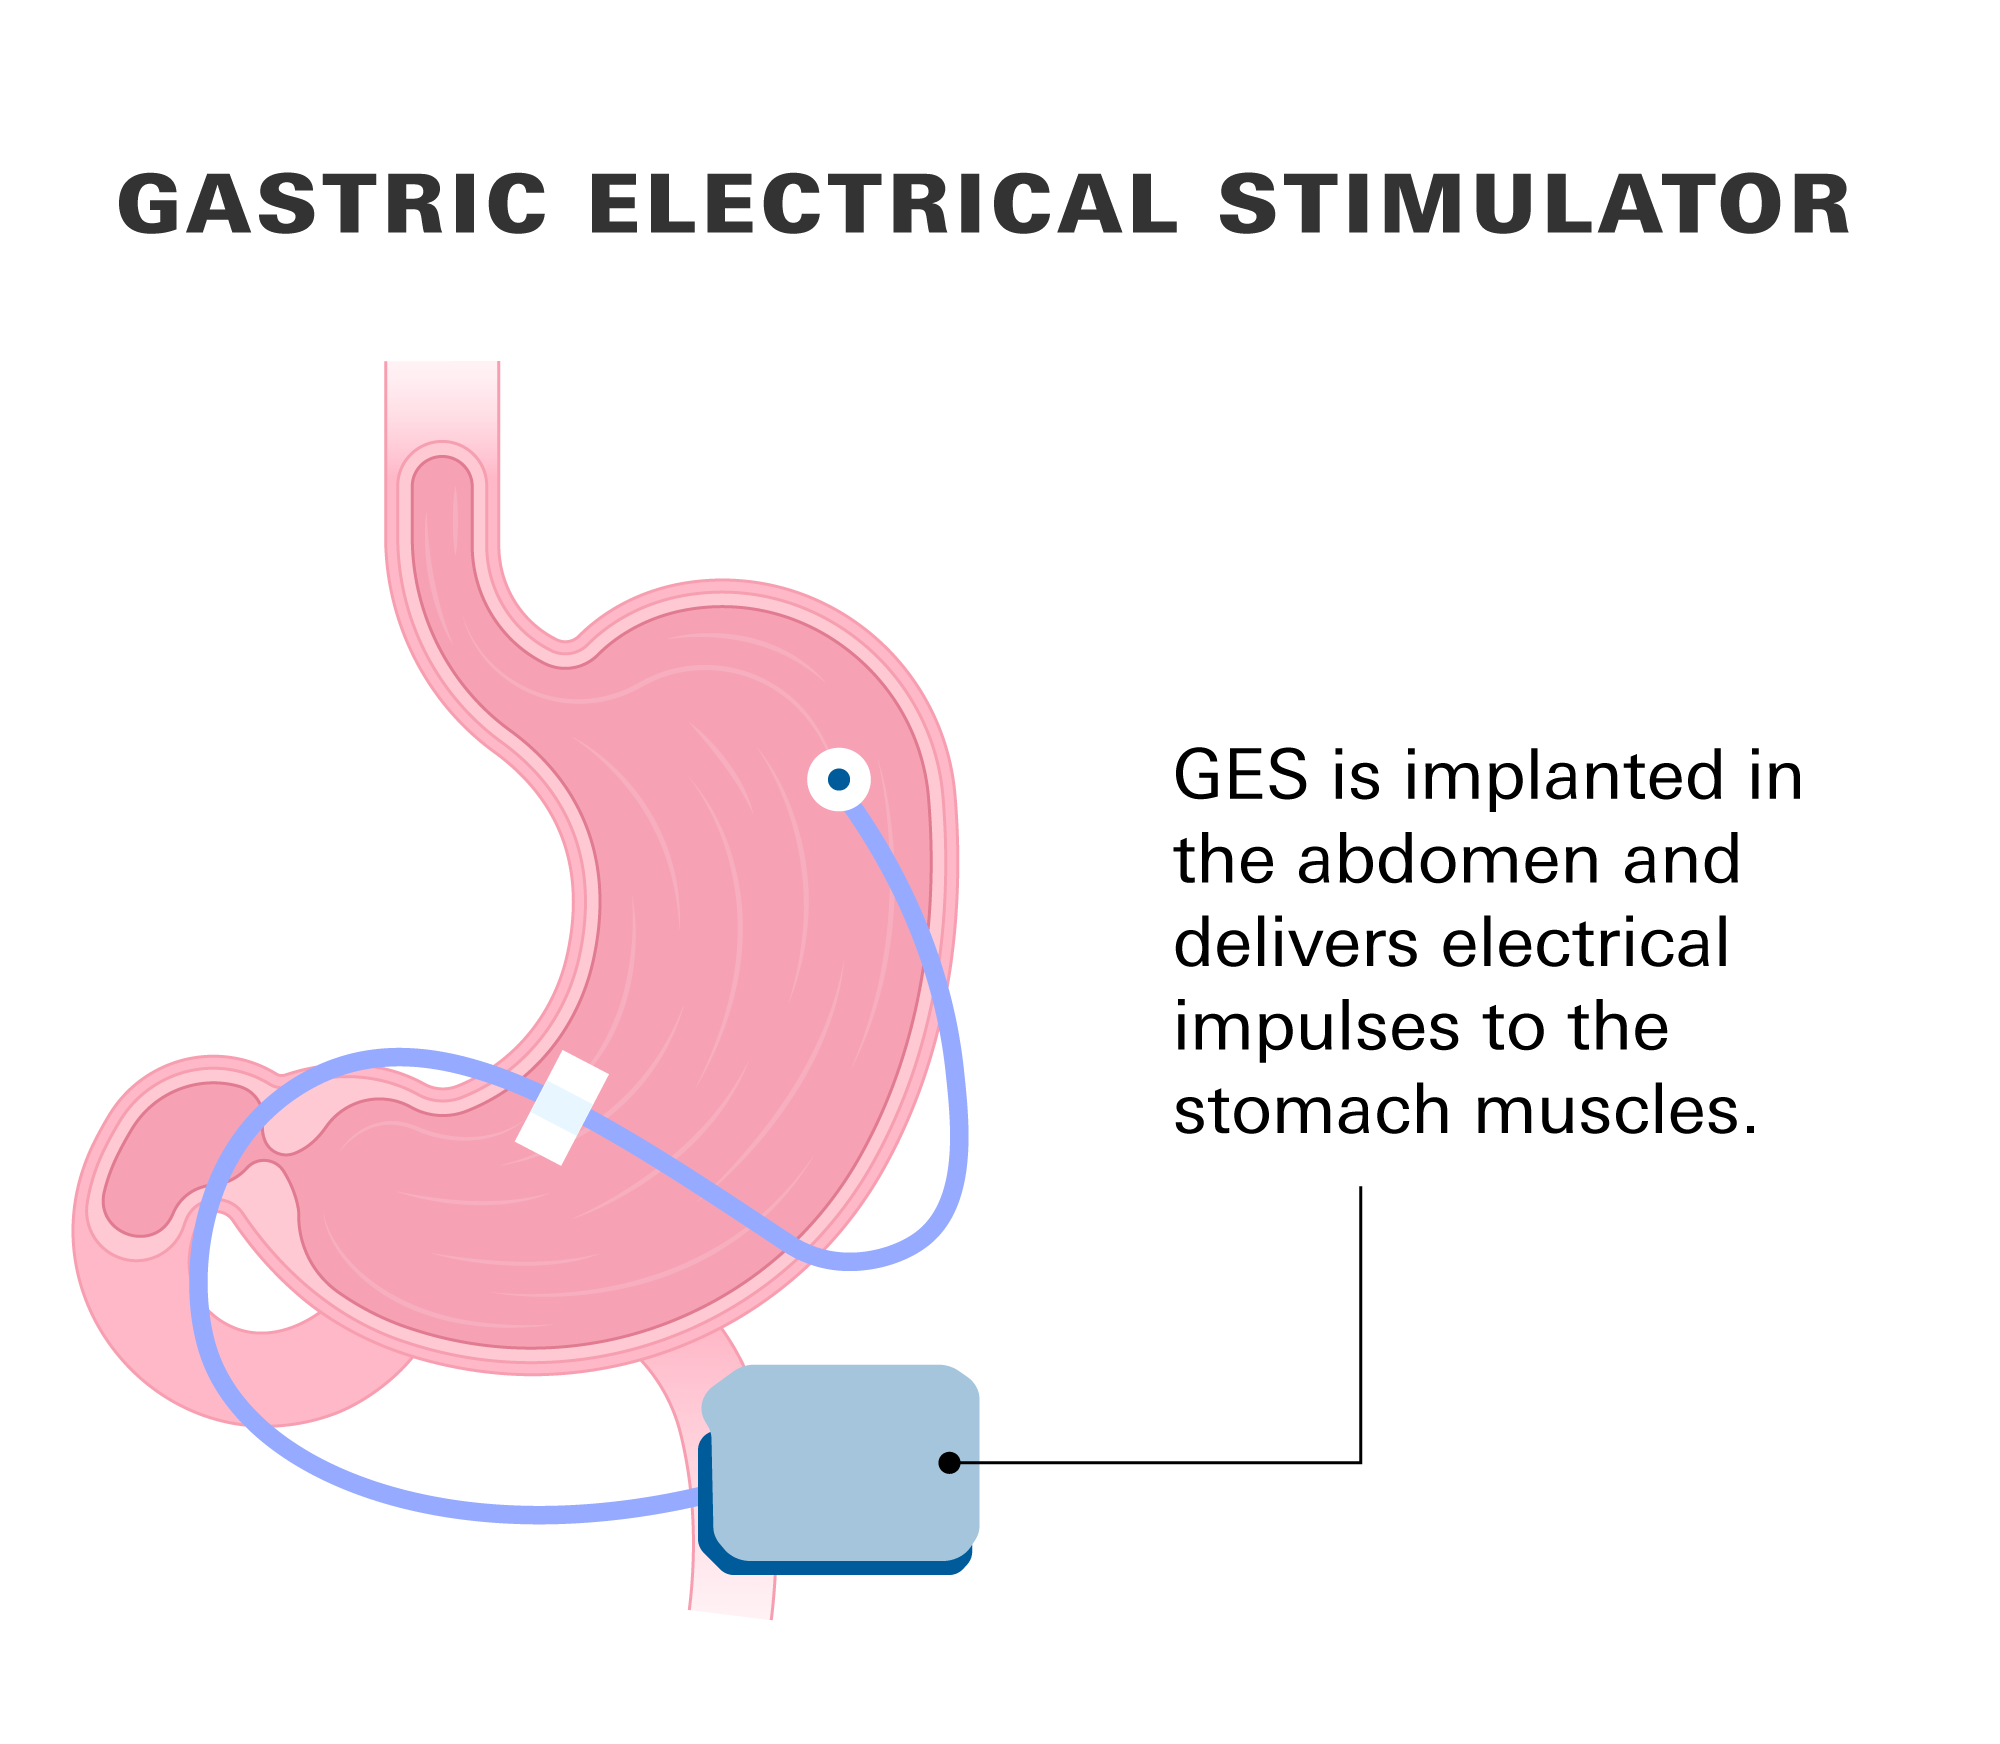 Gastric electrical stimulator